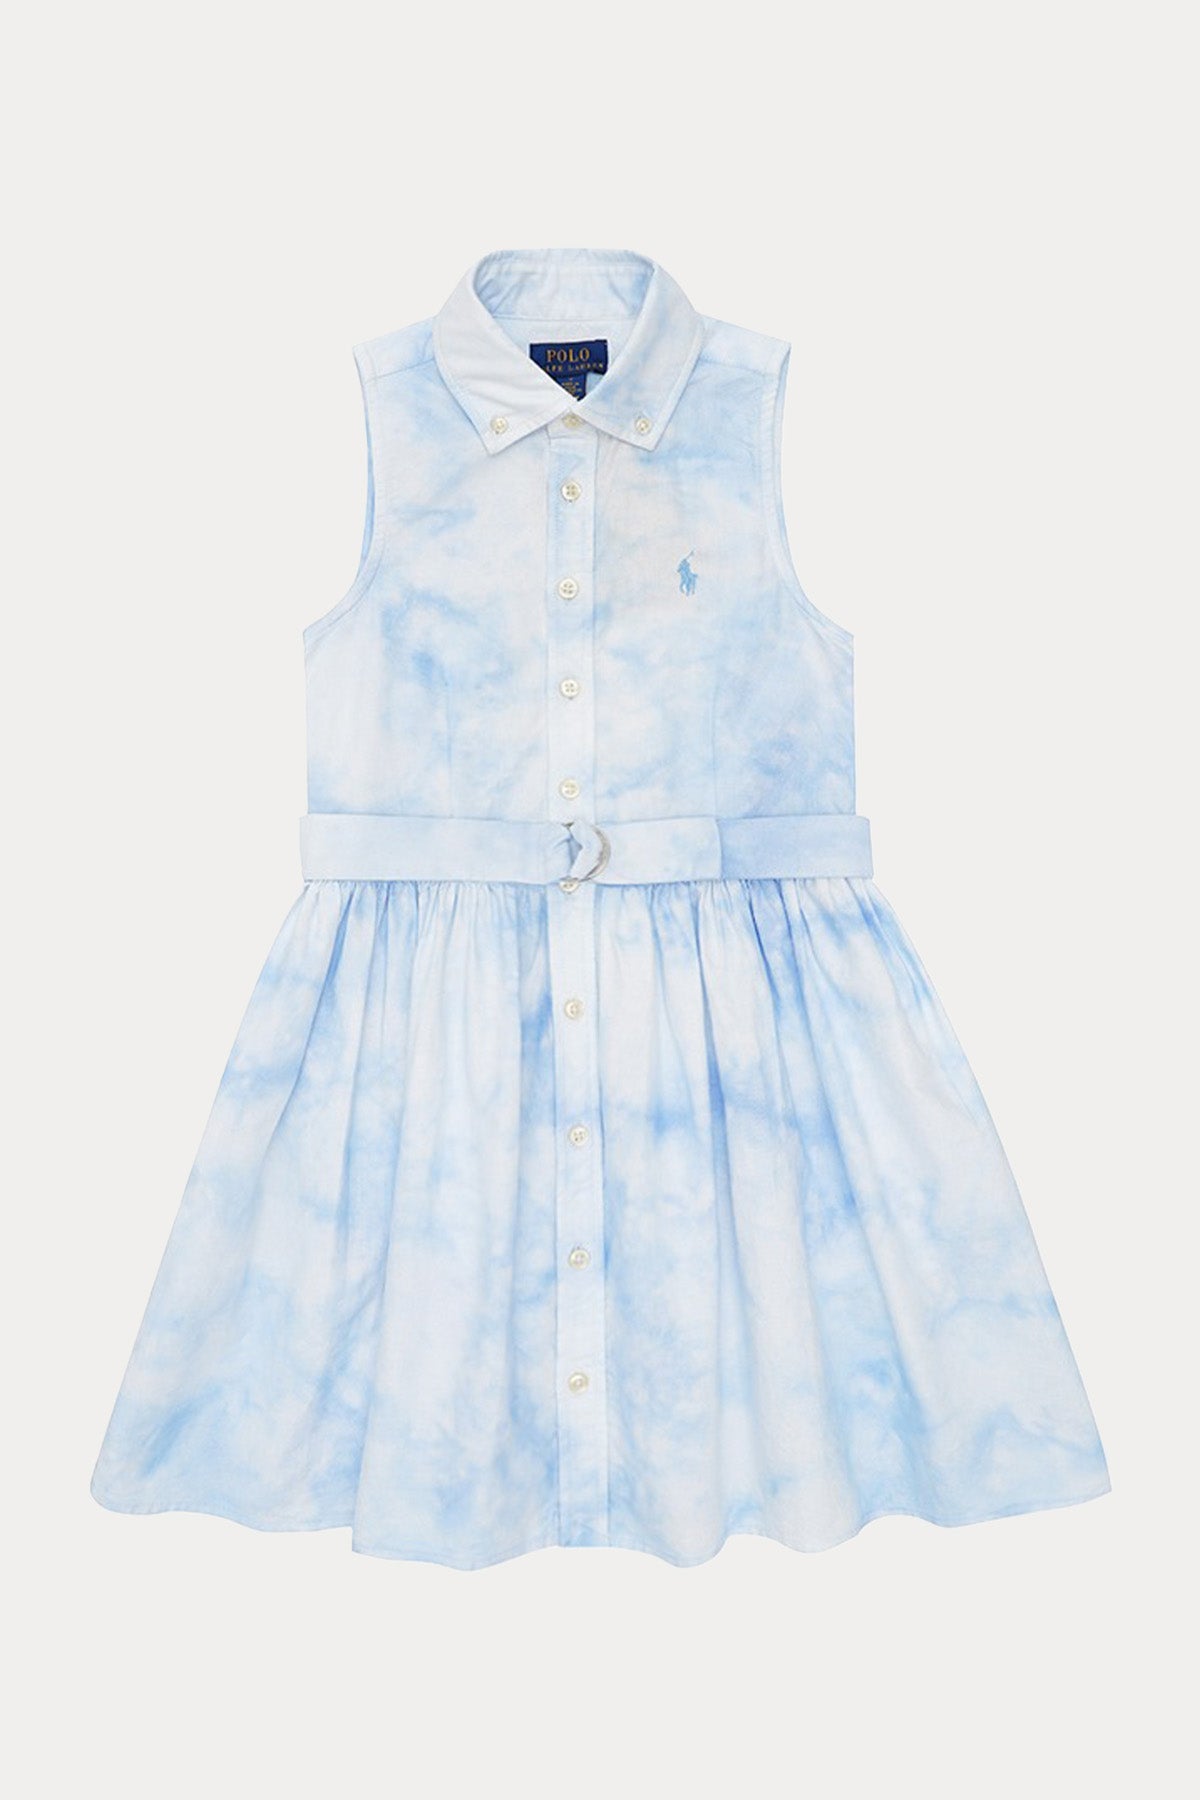 Polo Ralph Lauren Kids 5-6 Yaş Kız Çocuk Kemerli Elbise